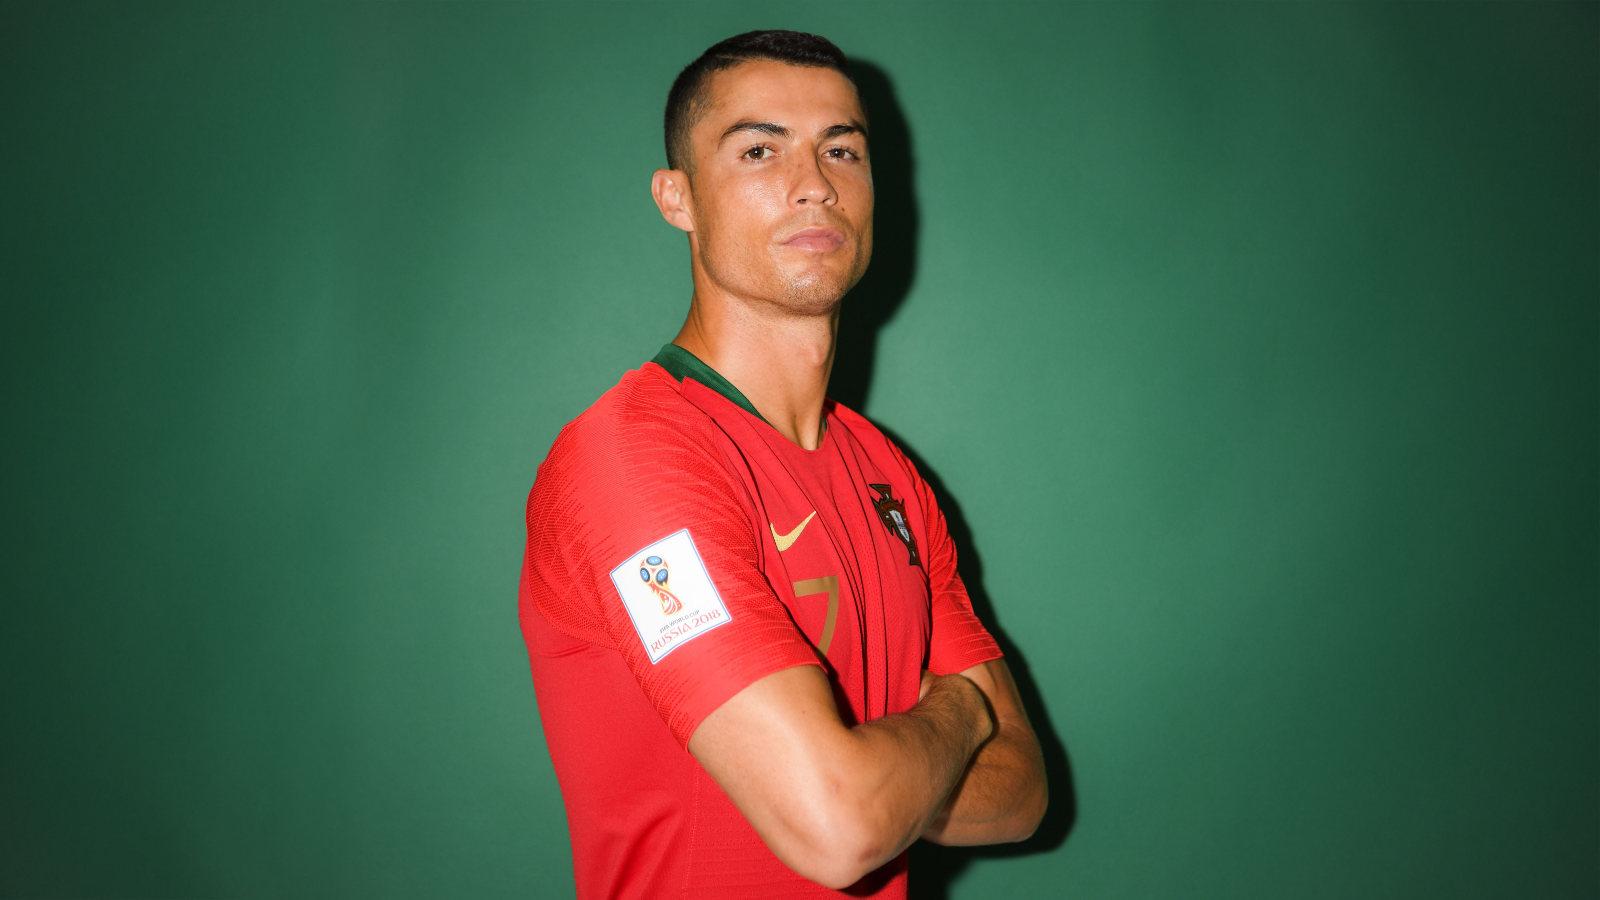 Cristiano Ronaldo FIFA 2018 Portrait 1600x900